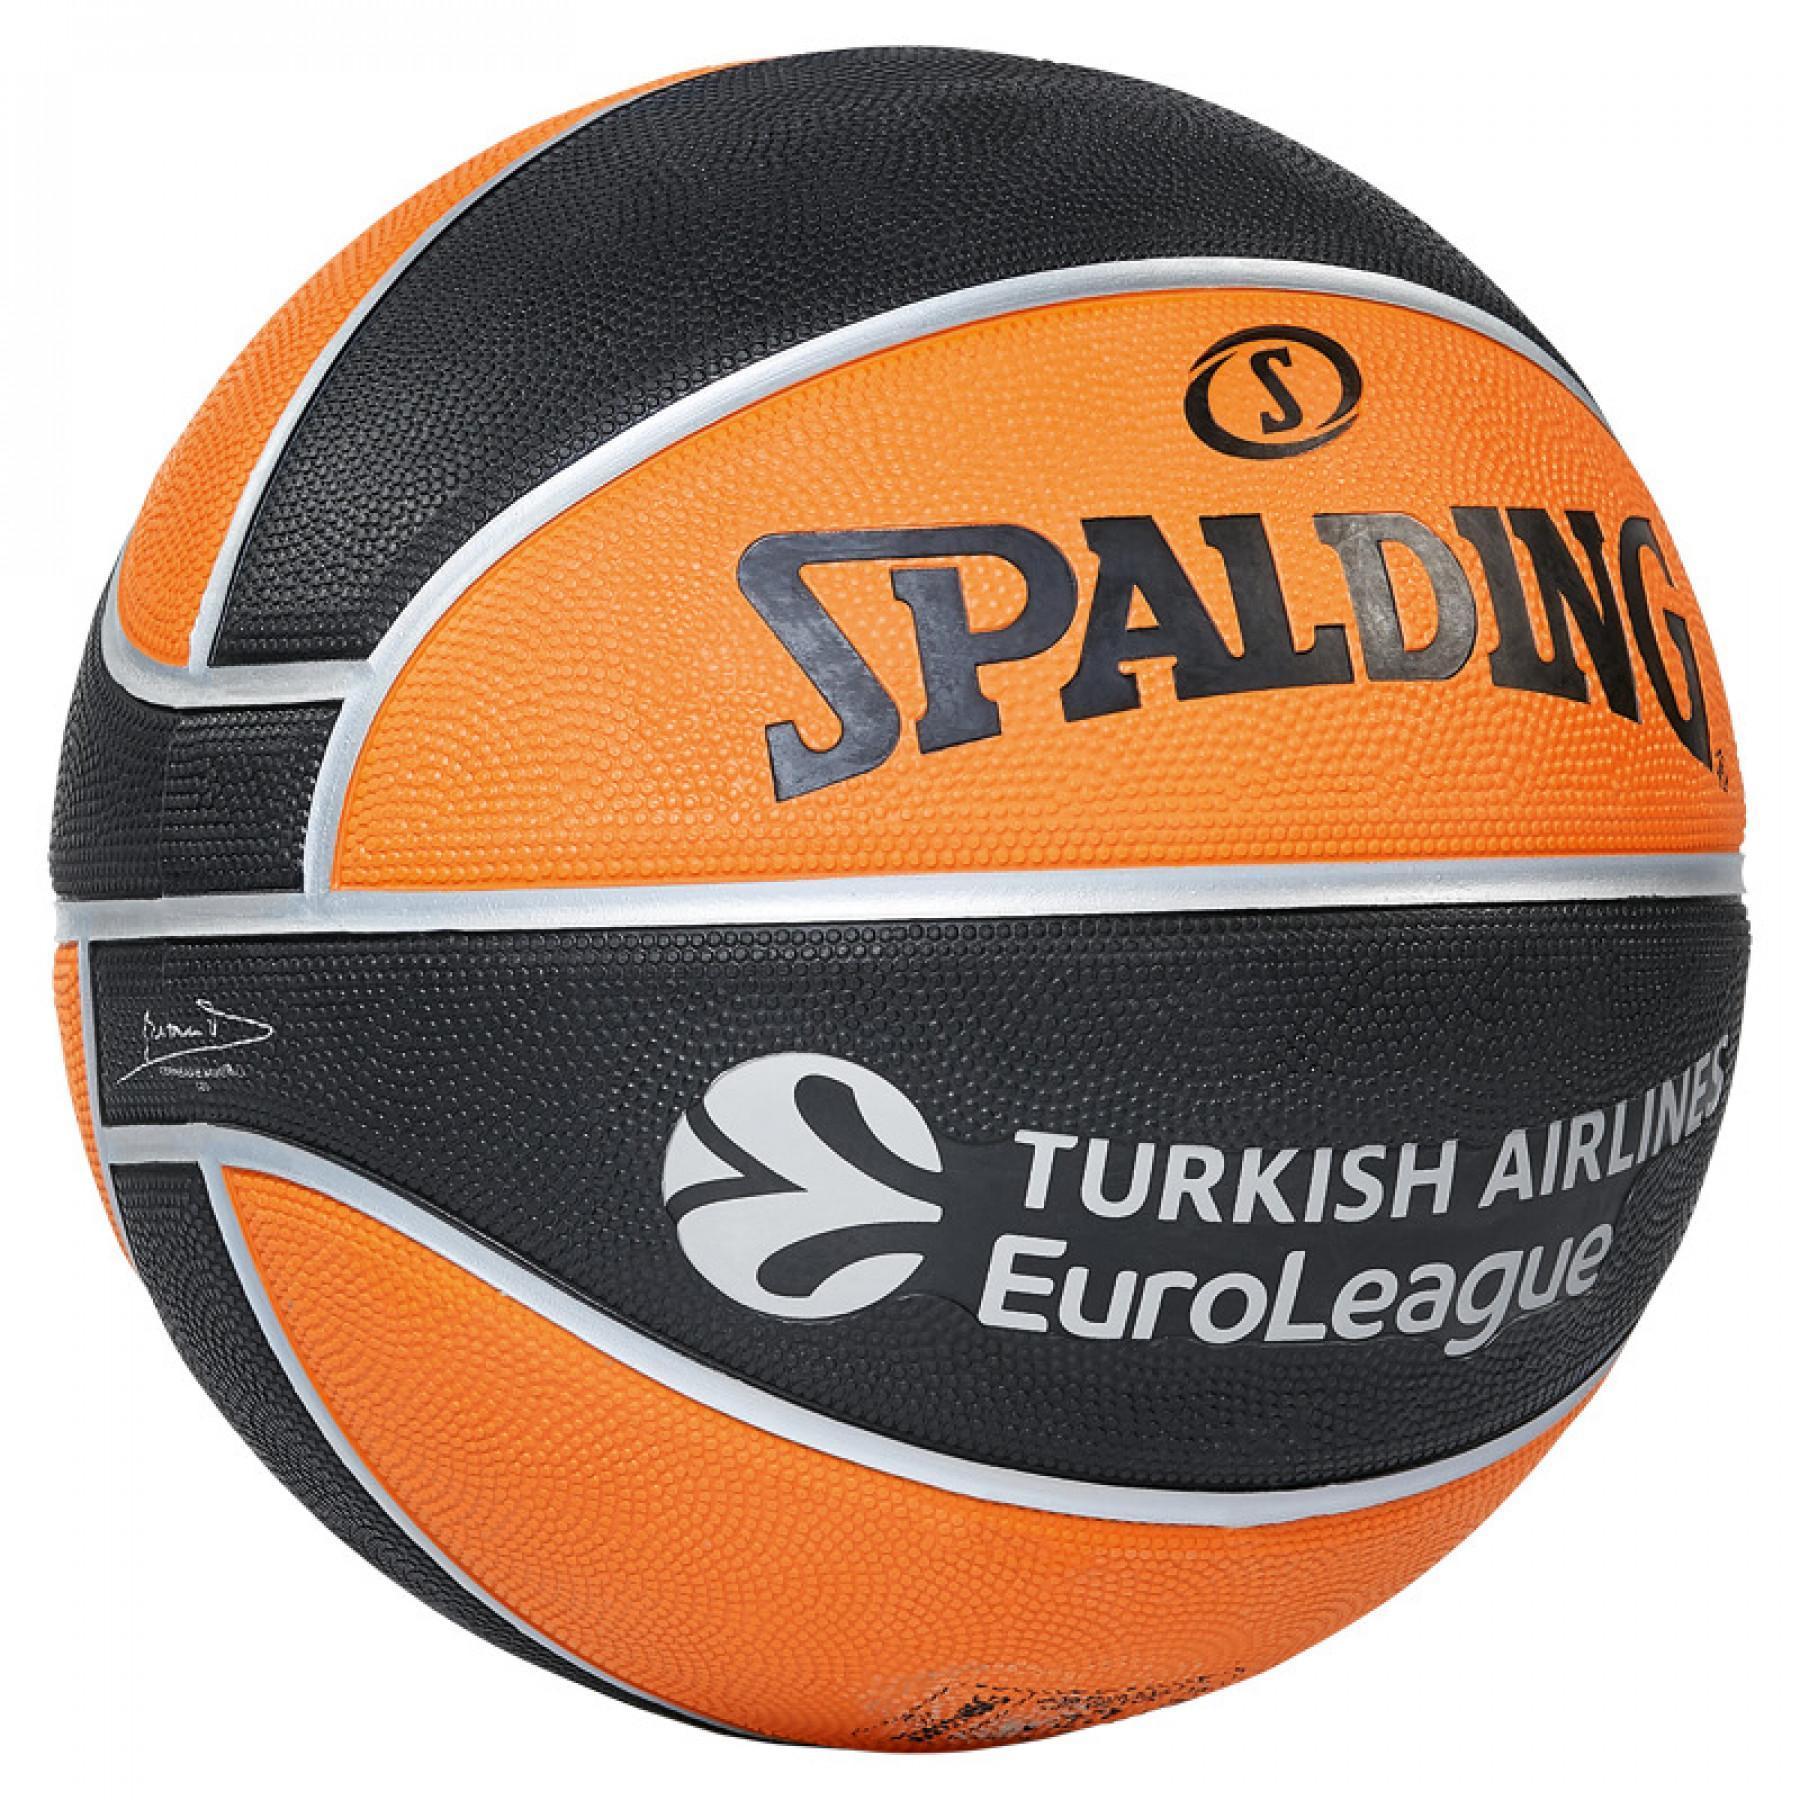 Palloncino Spalding Euroleague Tf150 Outdoor (84-001z)